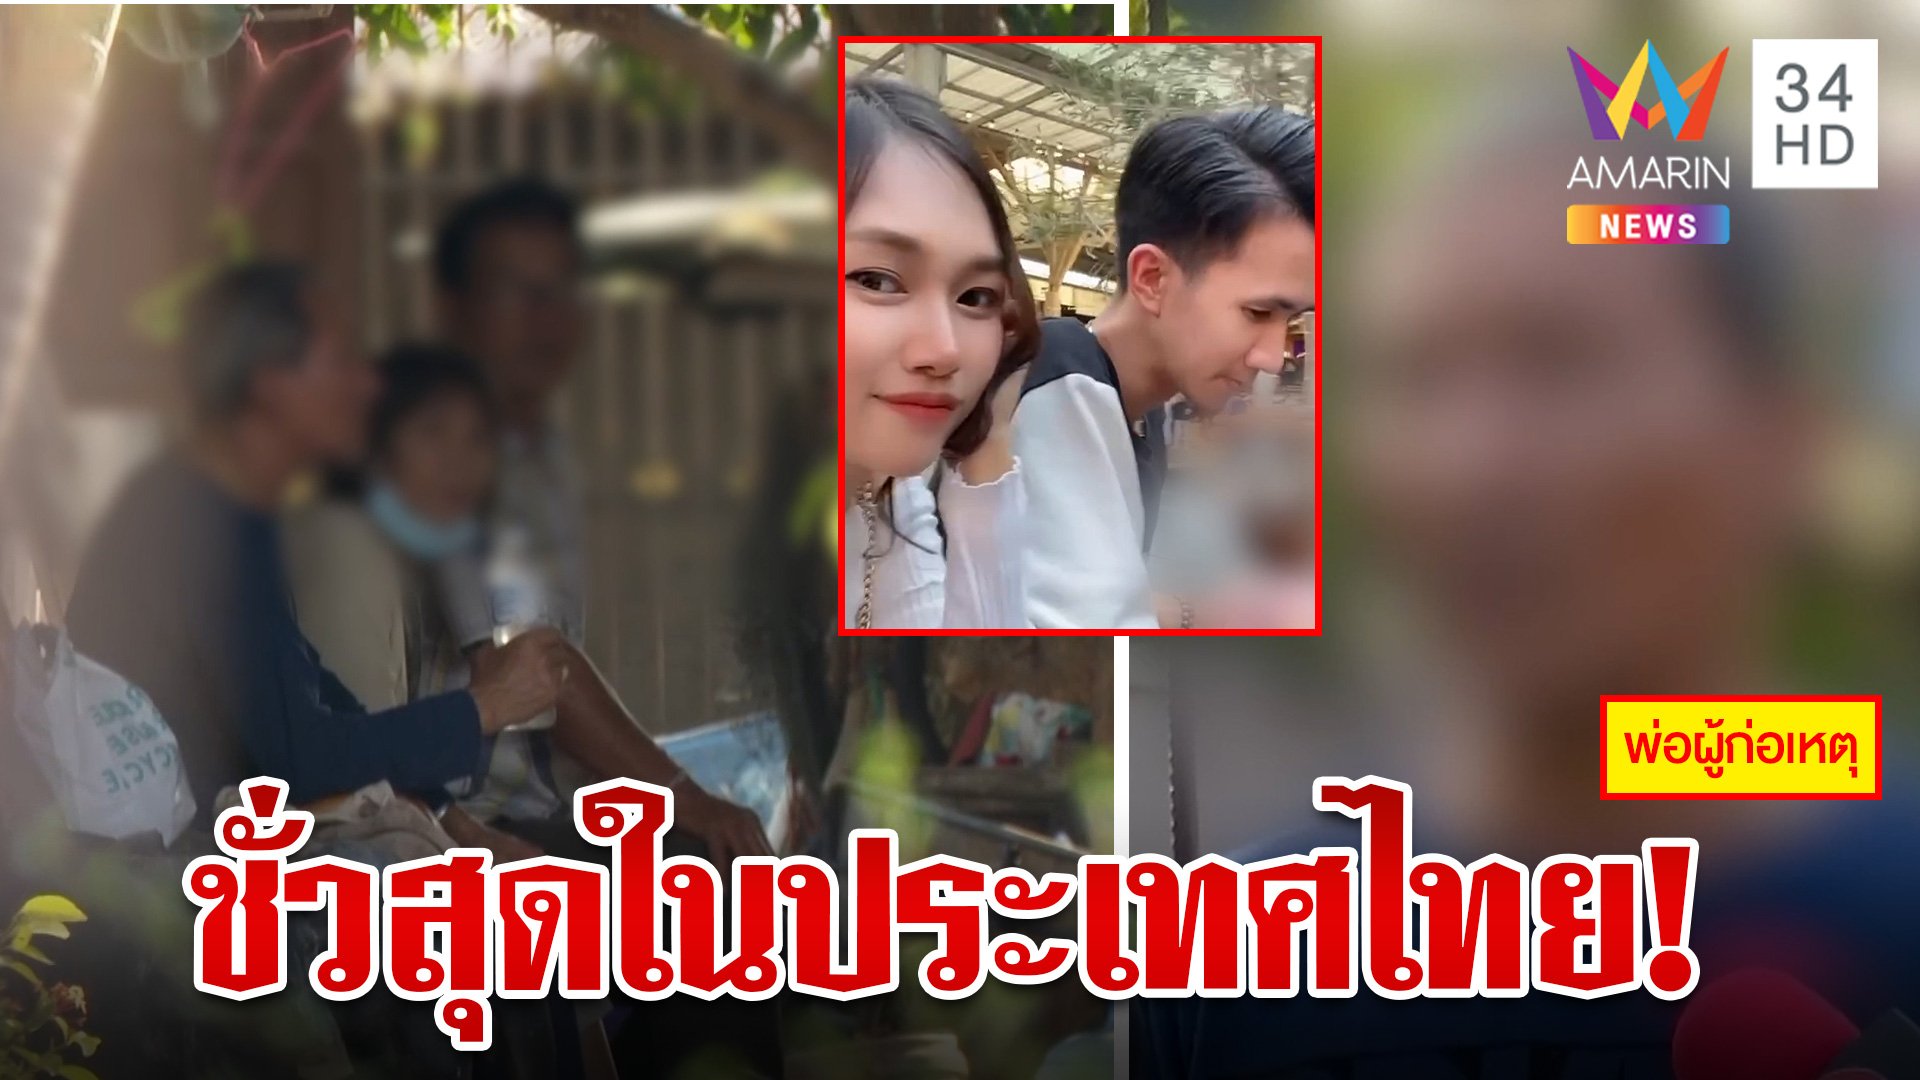 เปิดใจพ่อไอ้ทอยรุดขอขมาครอบครัว"น้องนุ่น" ญาติเหยื่อฉะชั่วที่สุดในประเทศไทย  | ทุบโต๊ะข่าว | 21 ก.พ. 67 | AMARIN TVHD34